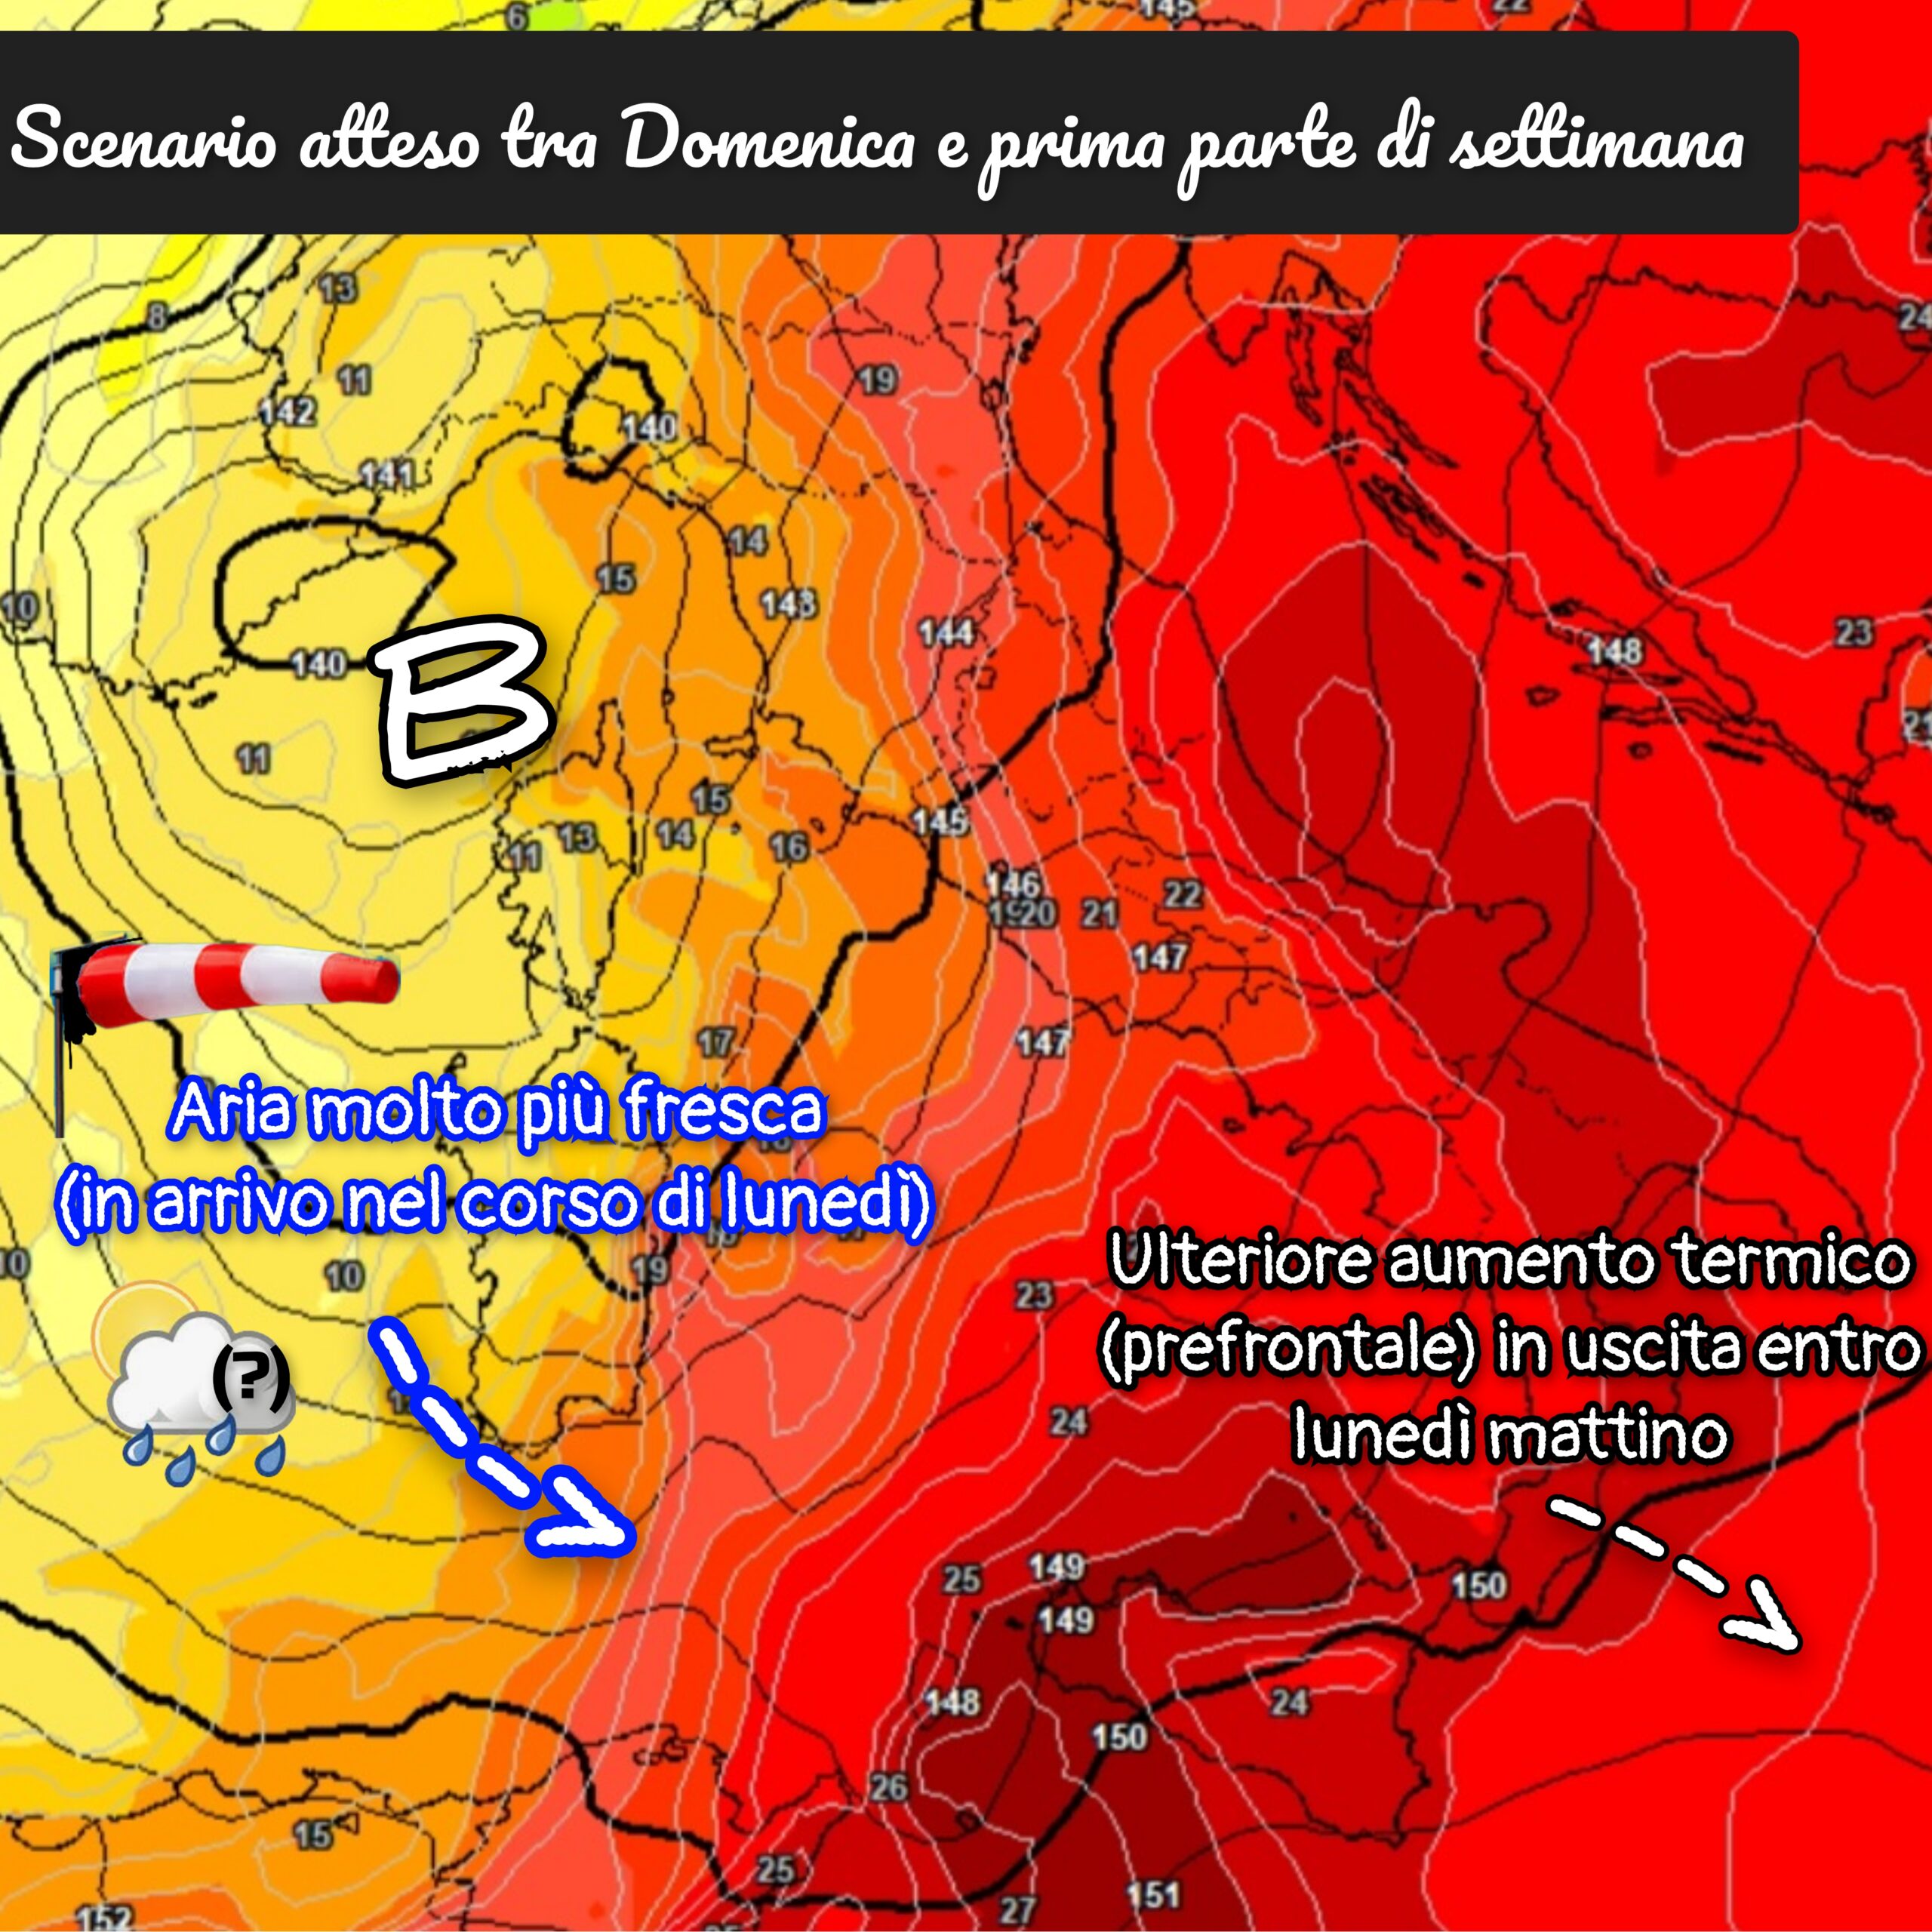 Meteo Messina e provincia: ancora caldo fino a Domenica; calo termico, vento e variabilità da lunedì